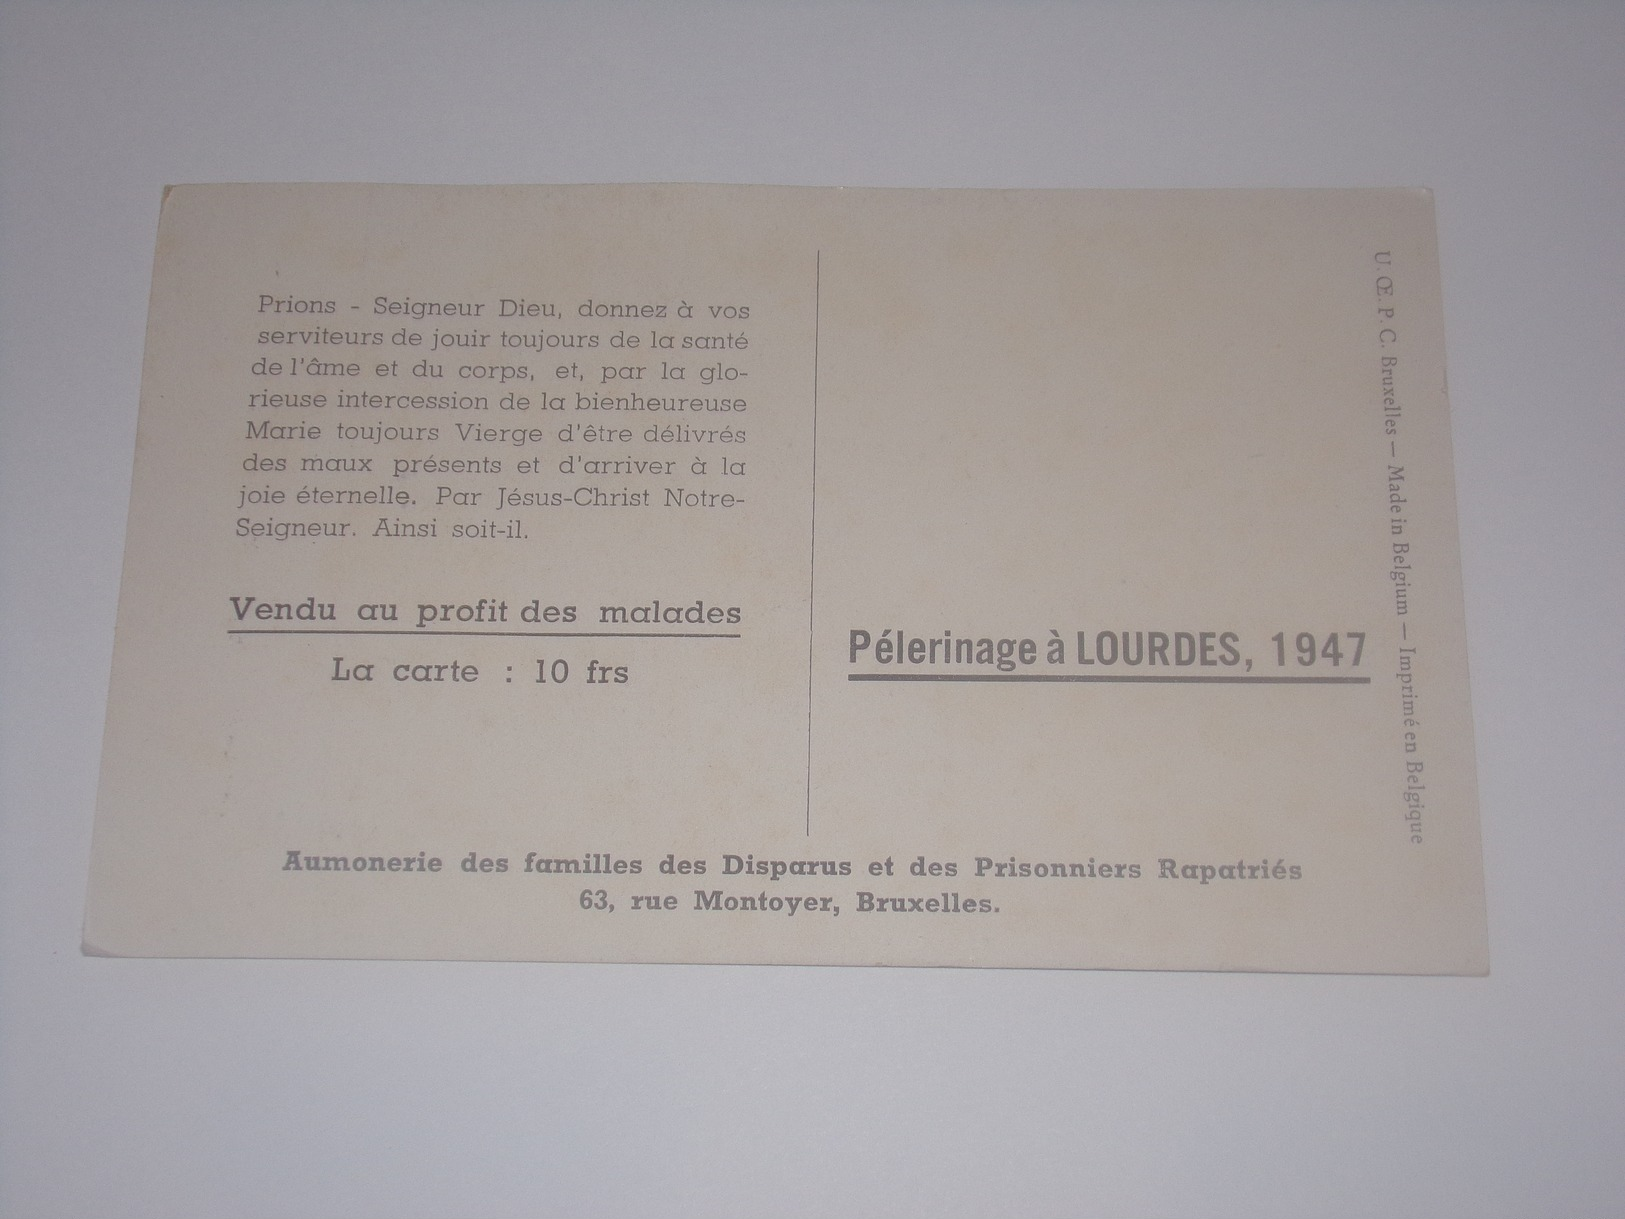 Sainte Véronique Essuie La Face De Jésus.Pélerinage à Lourdes 1947.Aumonerie Familles Des Disparus Et Prisonniers. - Jesus